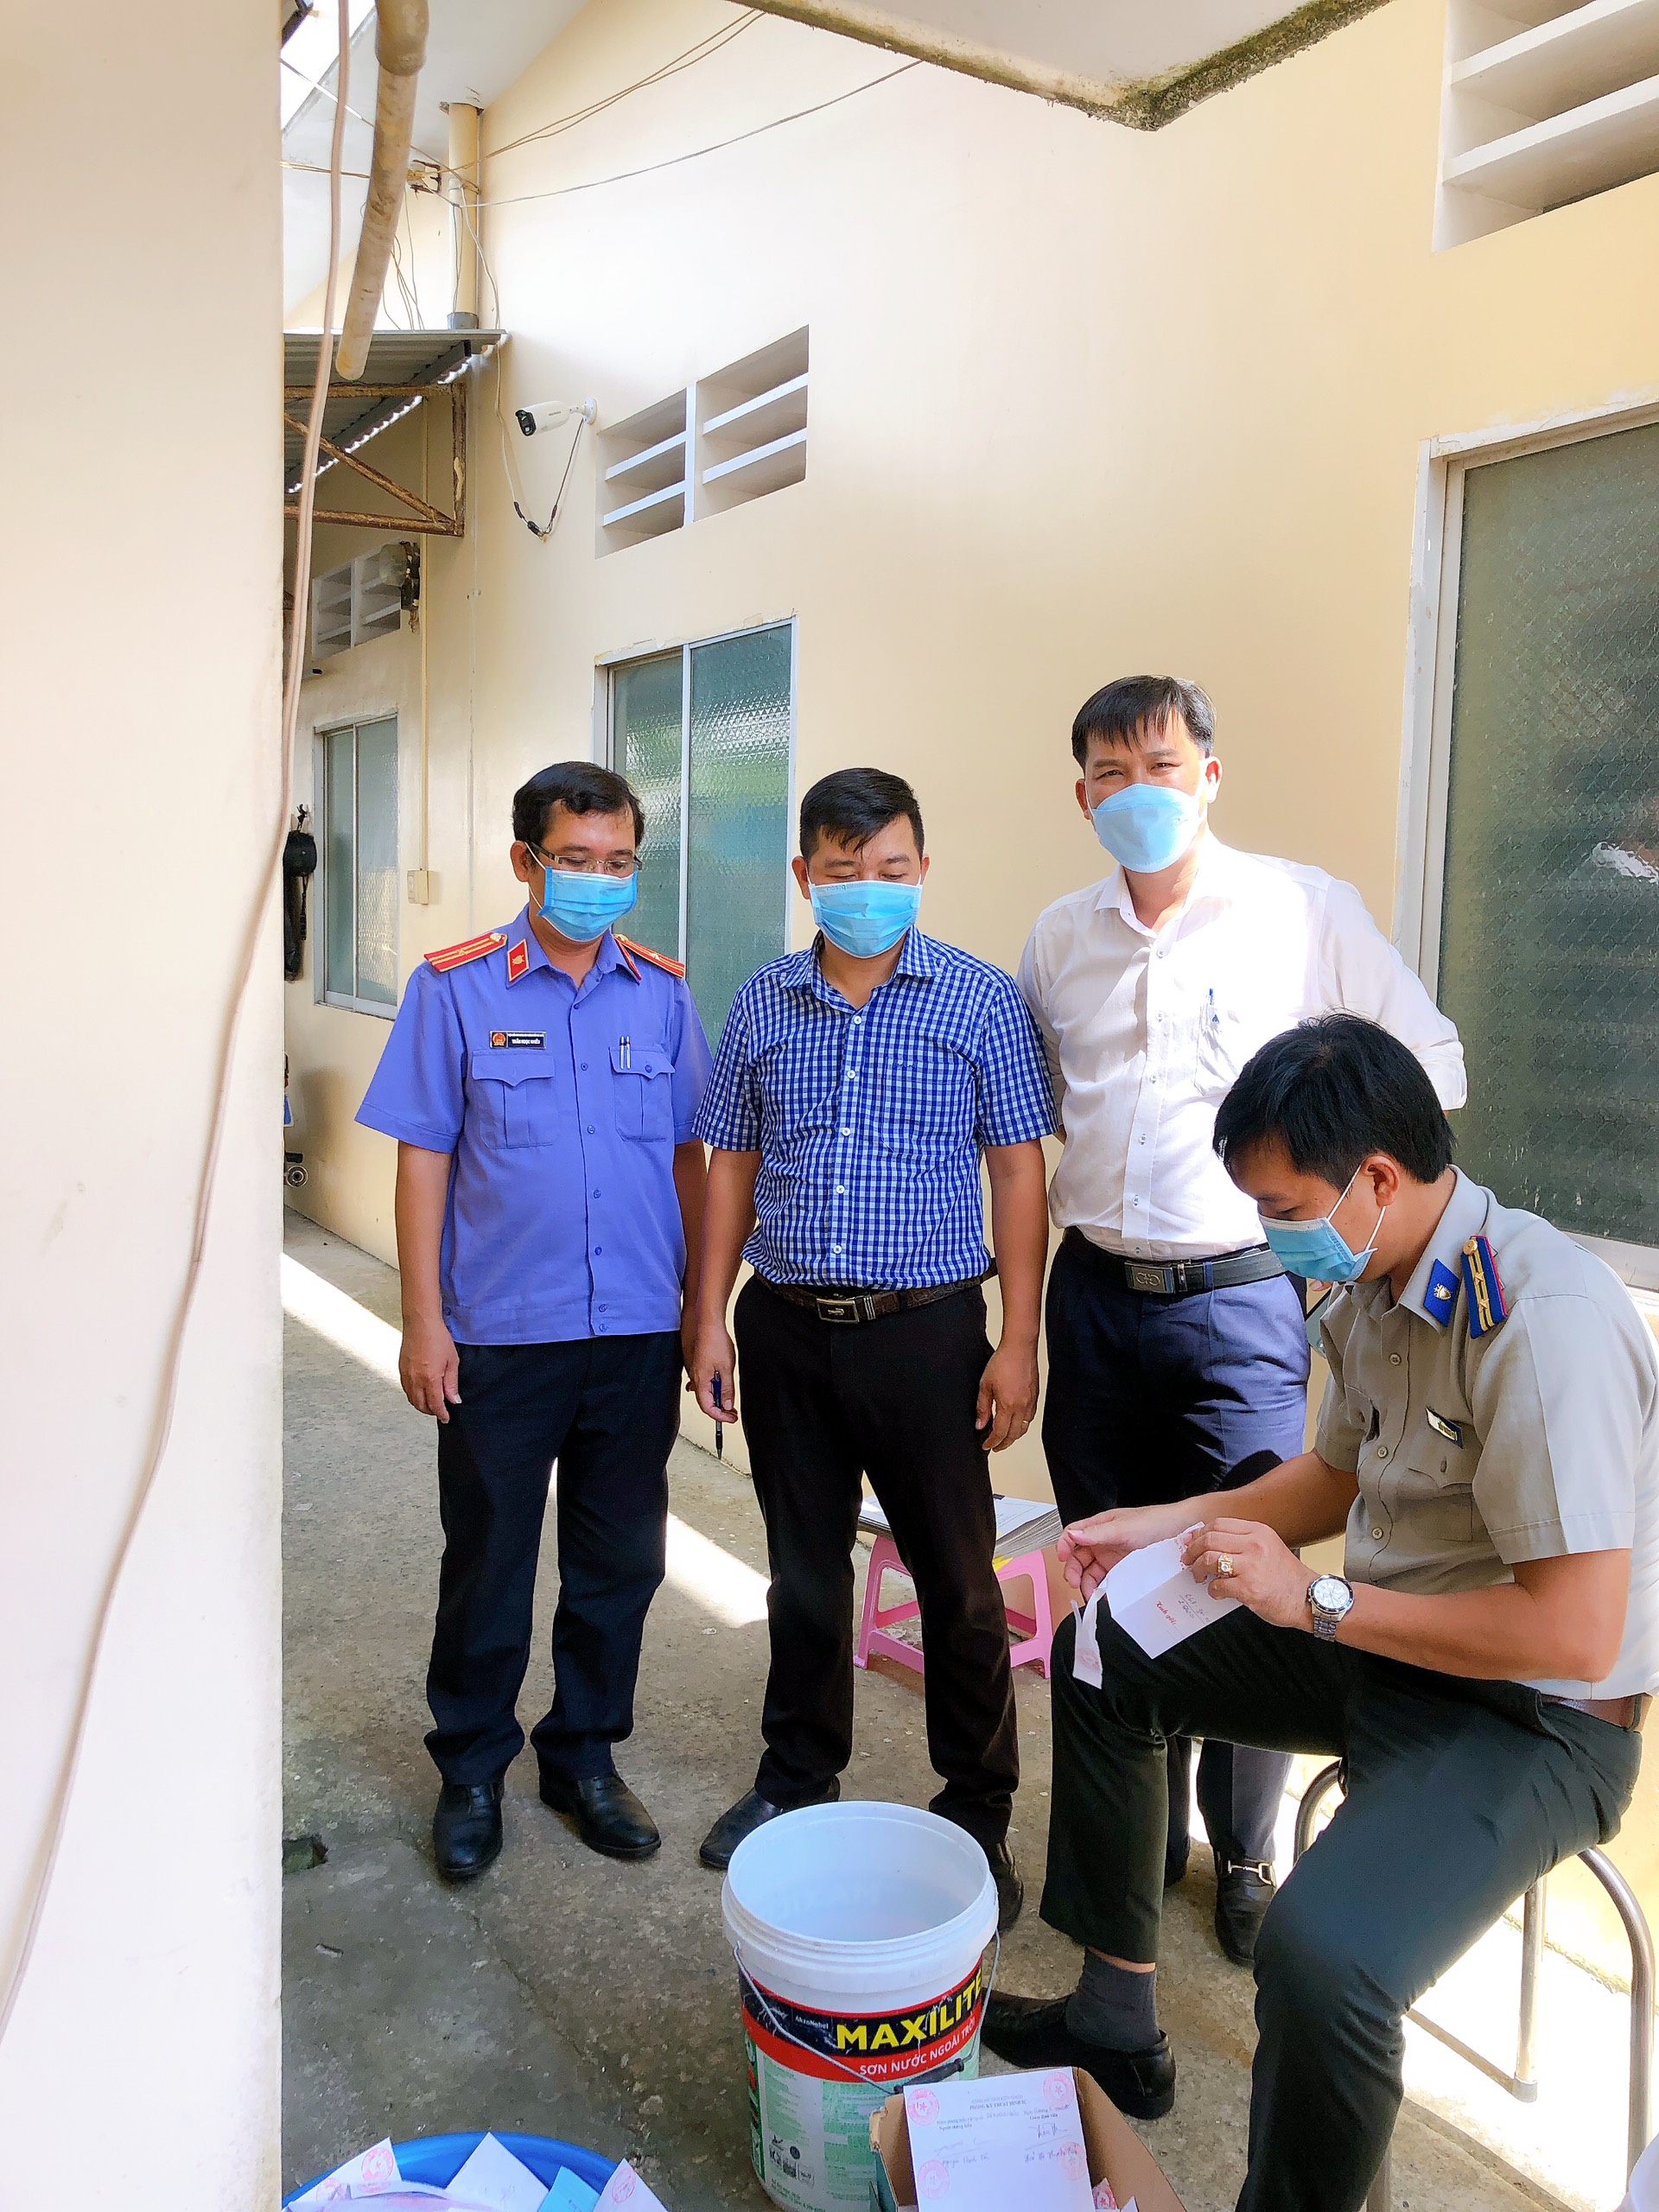 Chi cục Thi hành án dân sự thành phố Phú Quốc tổ chức tiêu hủy vật chứng